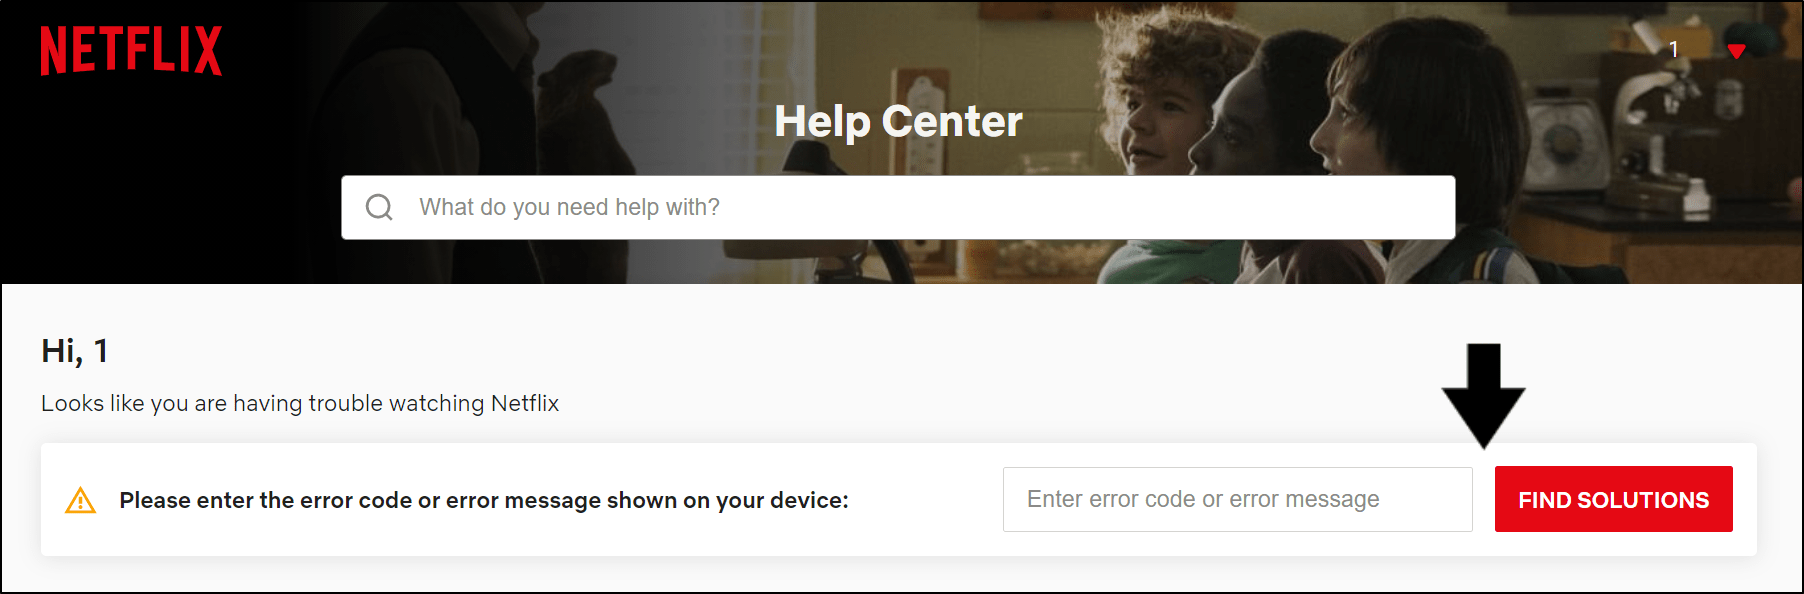 resuelva el código de error de descarga de Netflix a través del Centro de ayuda para corregir descargas que no funcionan o no se reproducen